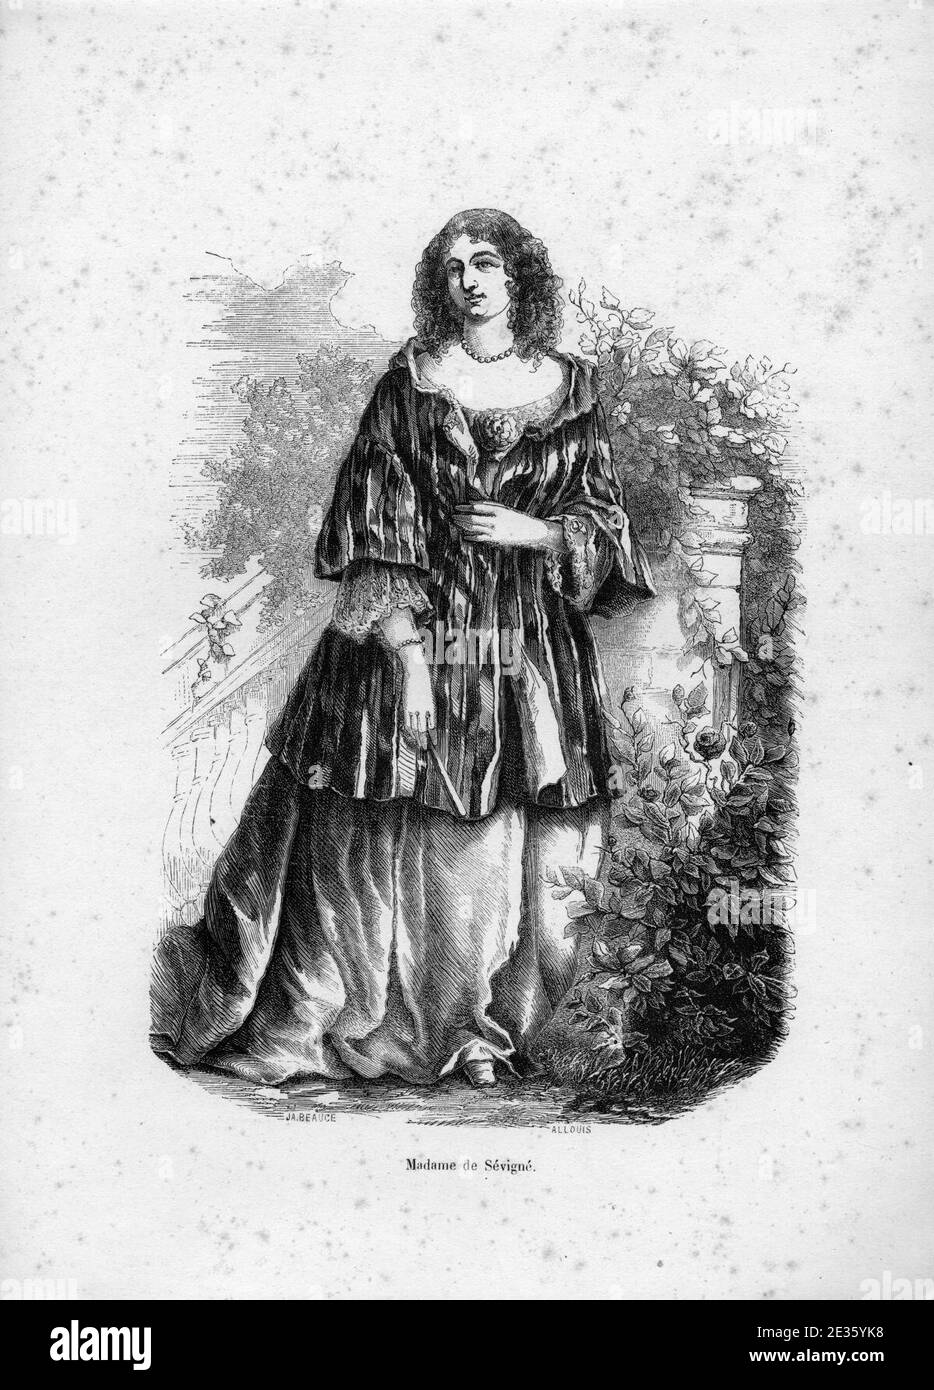 Madame de Sévigné par Allouis. Stock Photo